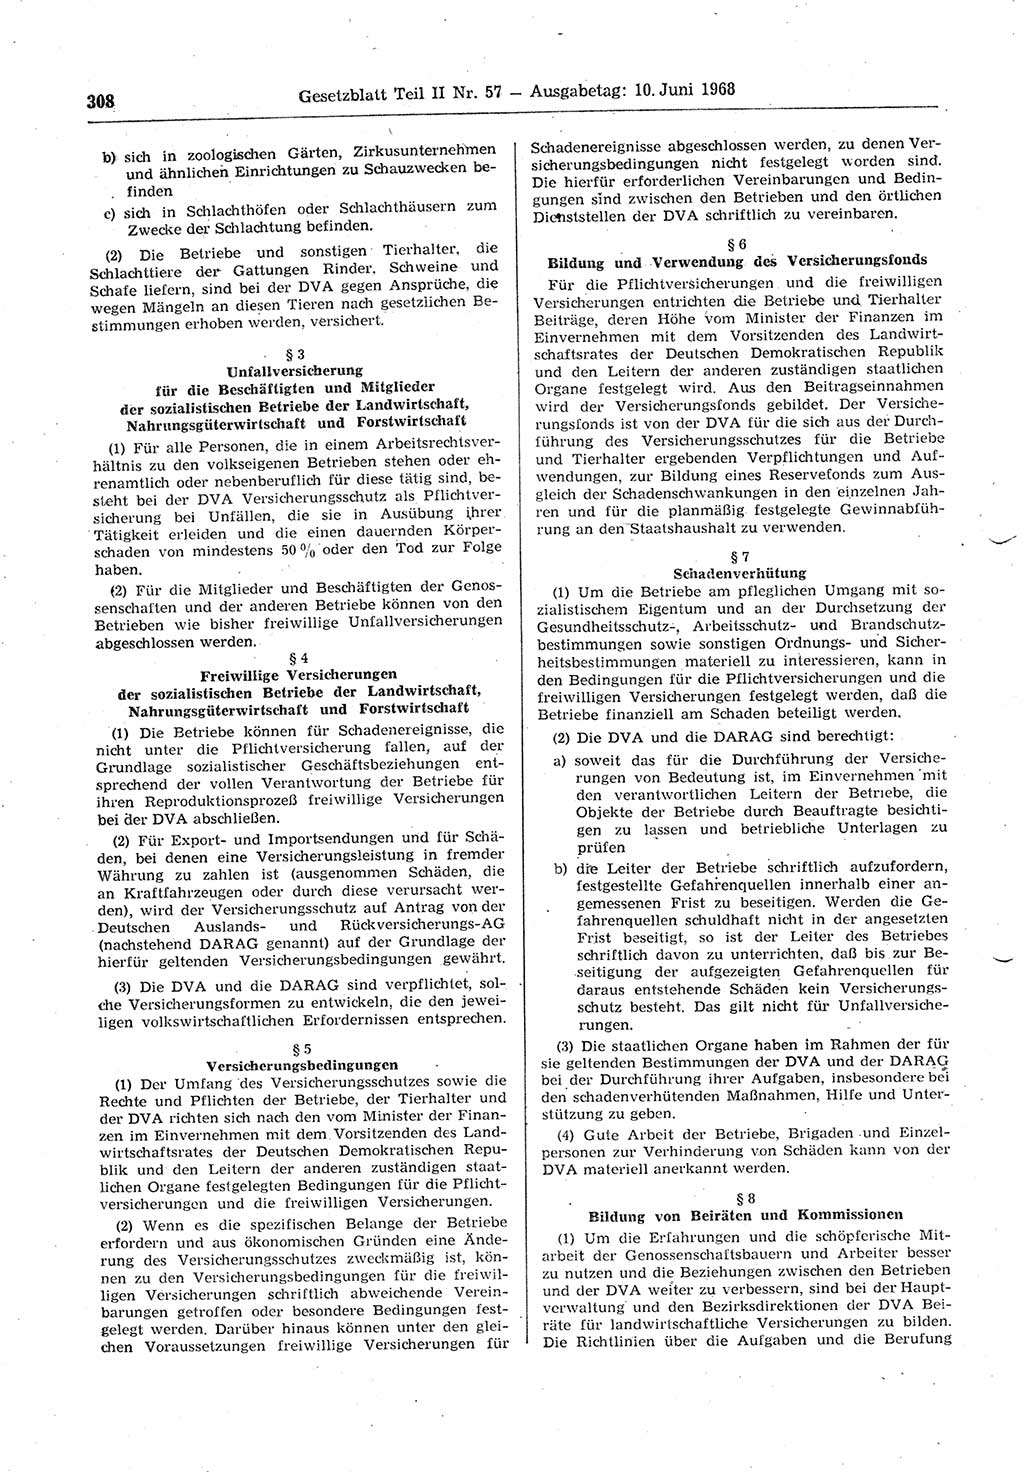 Gesetzblatt (GBl.) der Deutschen Demokratischen Republik (DDR) Teil ⅠⅠ 1968, Seite 308 (GBl. DDR ⅠⅠ 1968, S. 308)